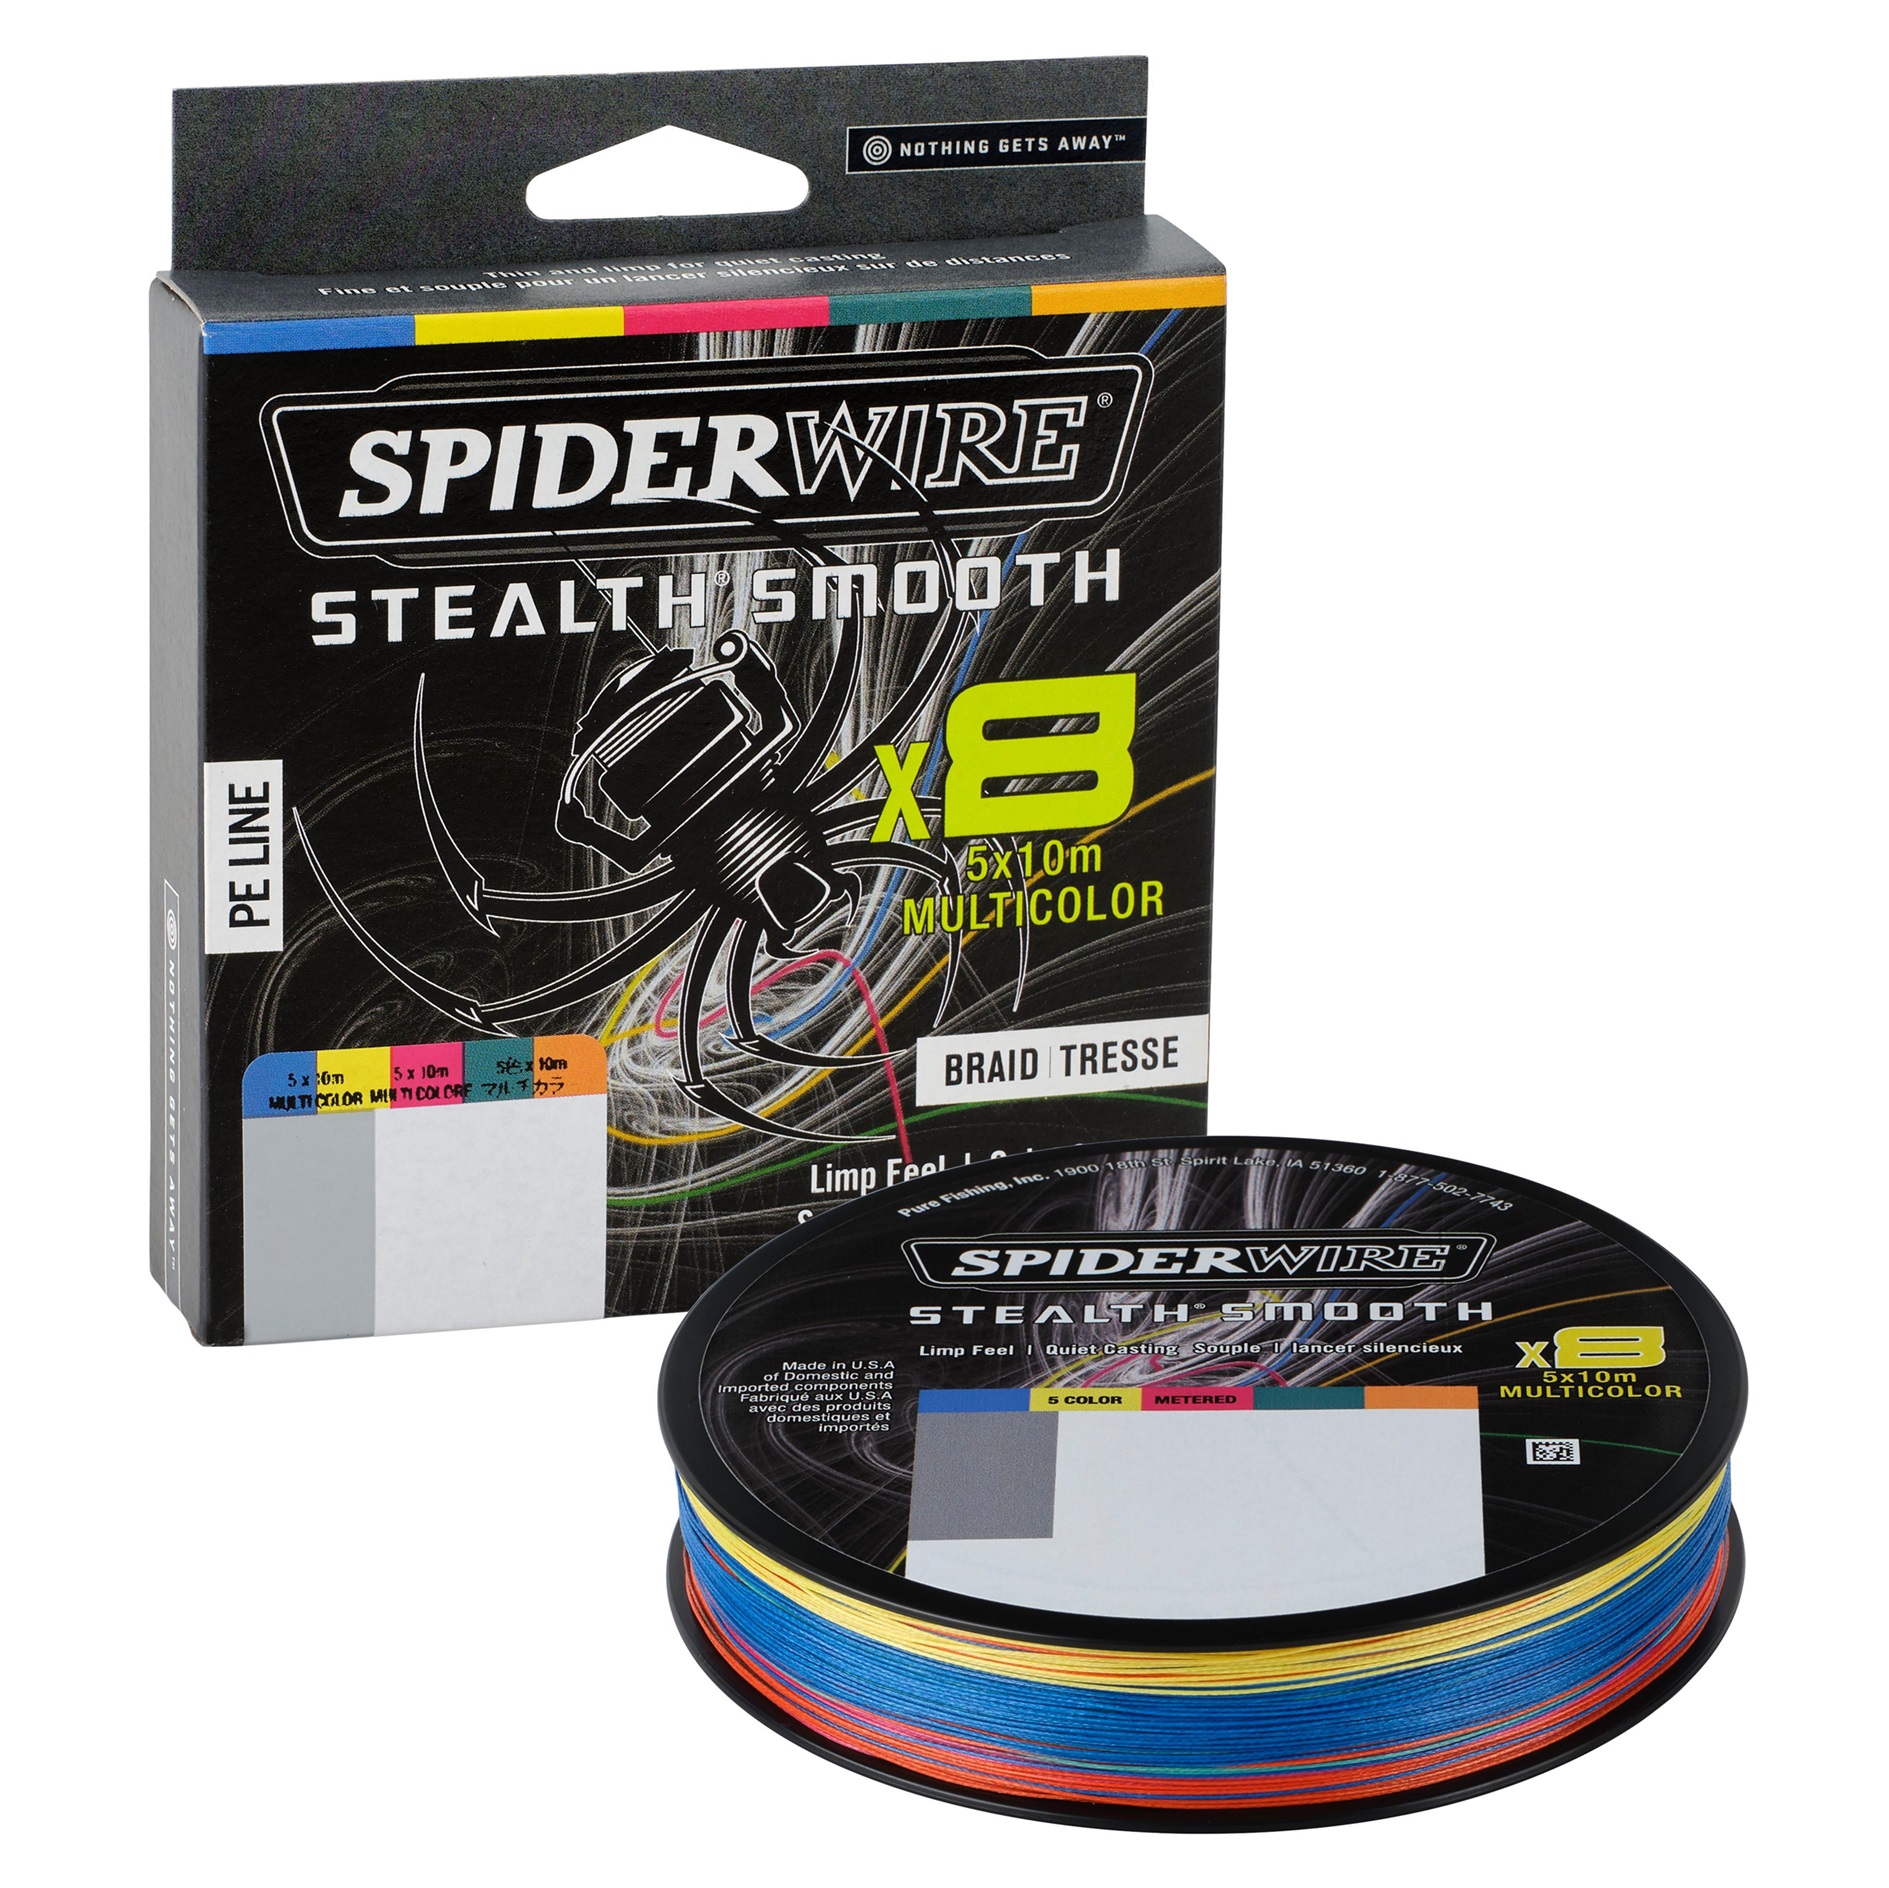 Spiderwire Stealth Smooth 8 Intrecciati multicolore (600m)